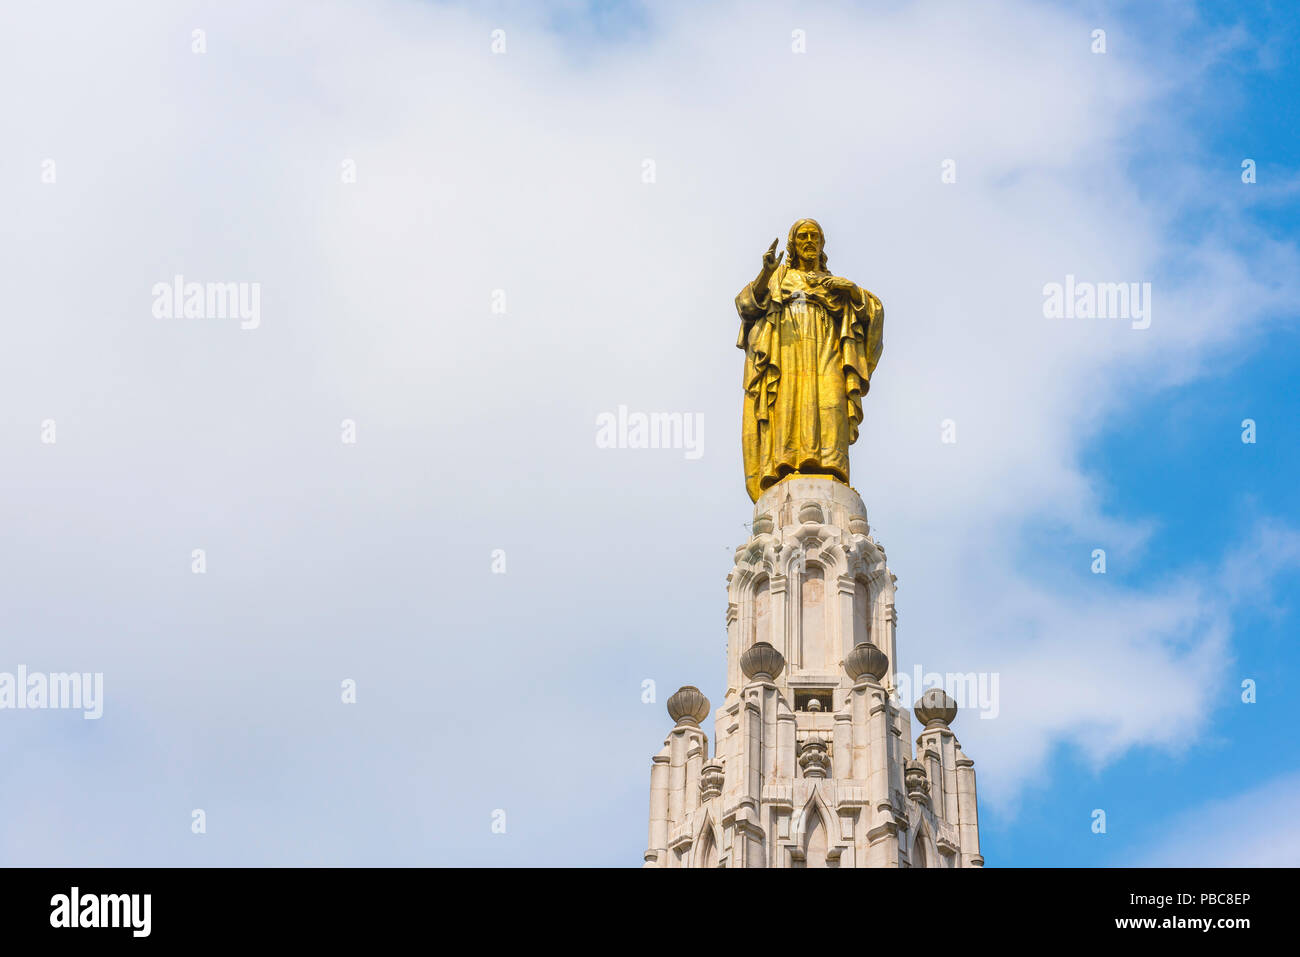 Bilbao Gesù Cristo, vista della statua dorata di Cristo sul Monumento al Sagrada Corazon de Jesus nel centro di Bilbao, Spagna. Foto Stock